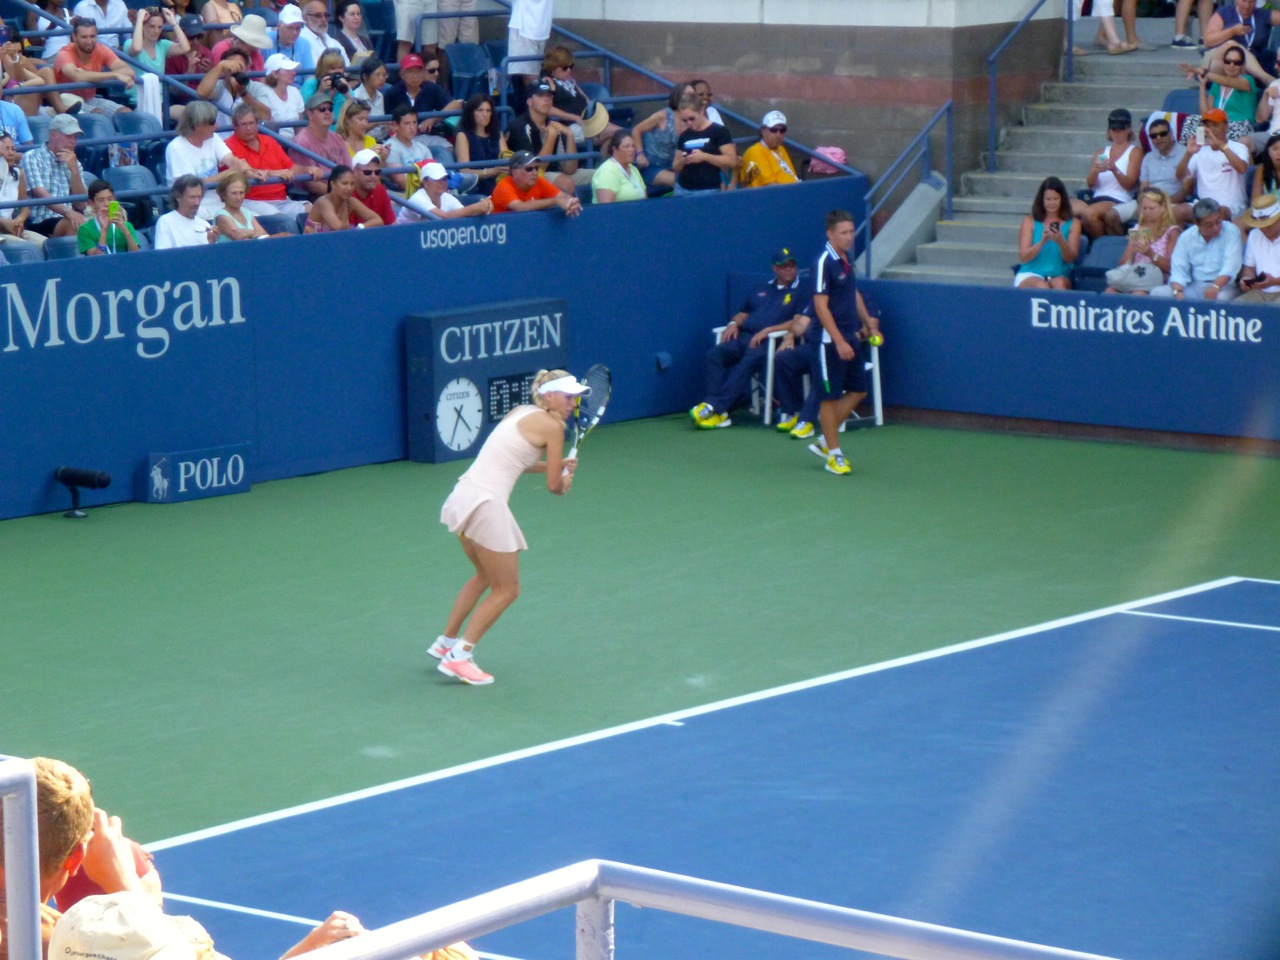 Signe og Henrik ser på Caroline Wozniacki til U.S. Open 2014. Foto: Signe Storr